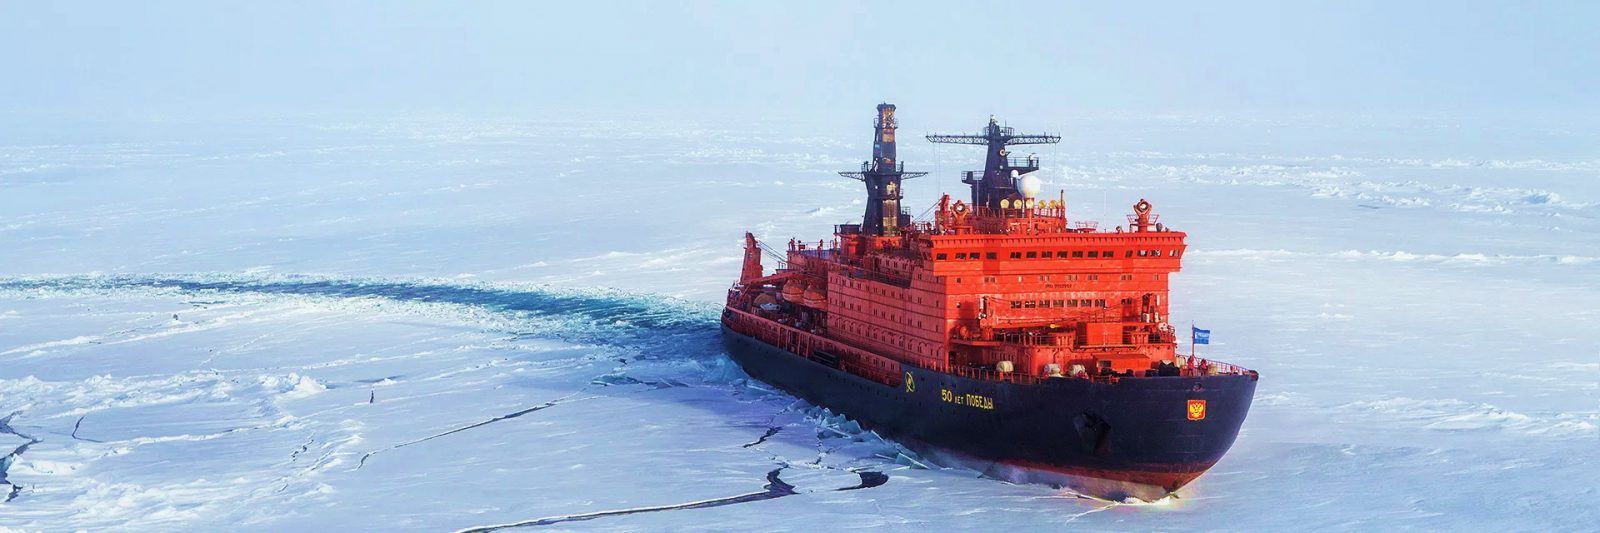 Арктика — Полярный транзит... Атомоход 50-летие Победы